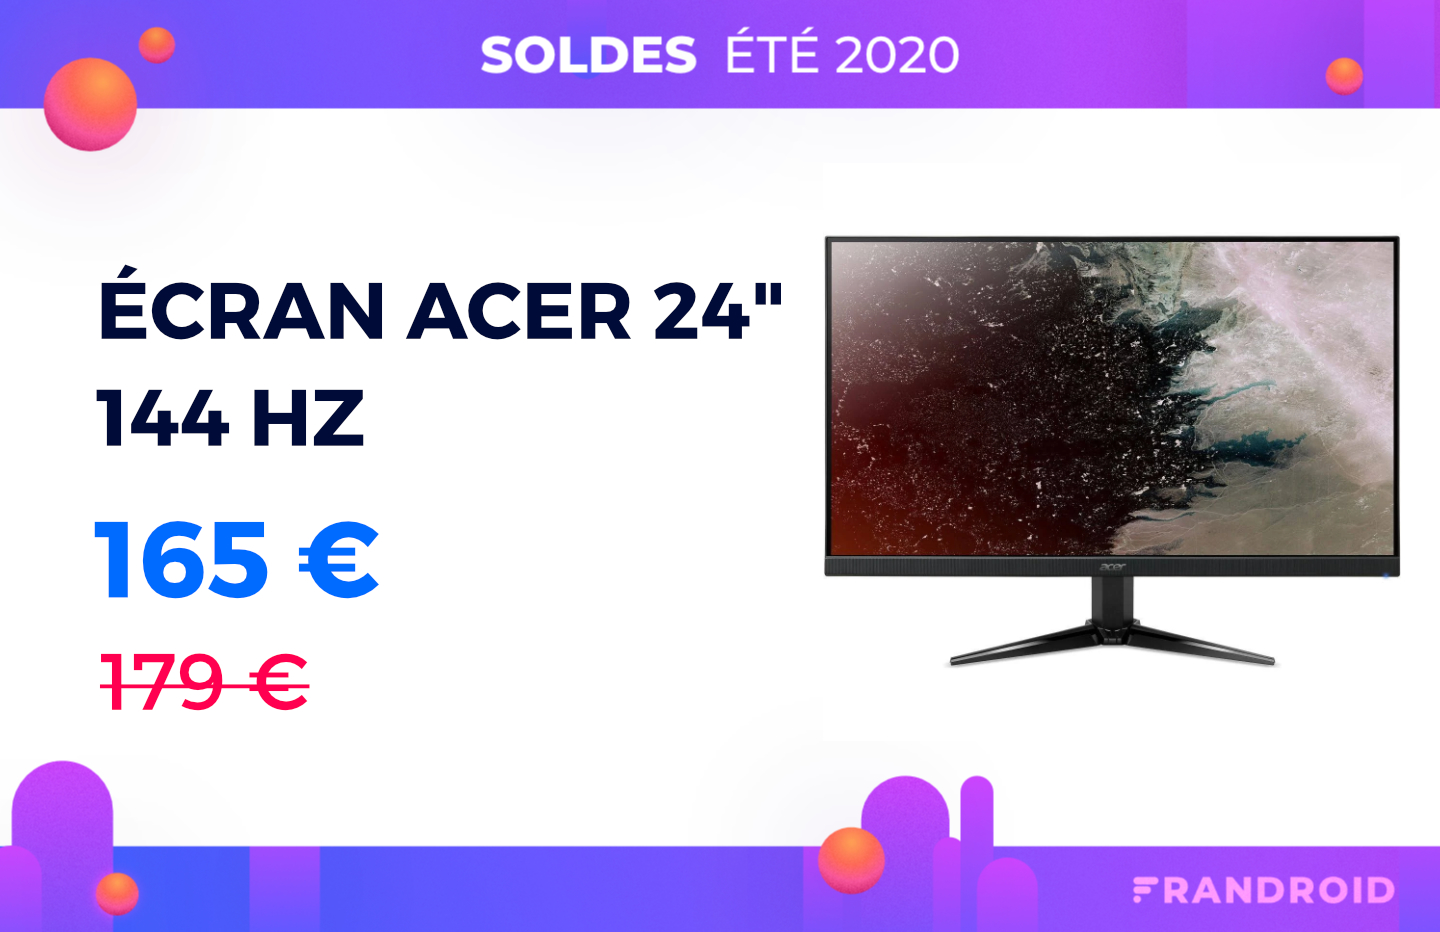 Seulement 165 € pour cet écran Acer 24 pouces et 144 Hz